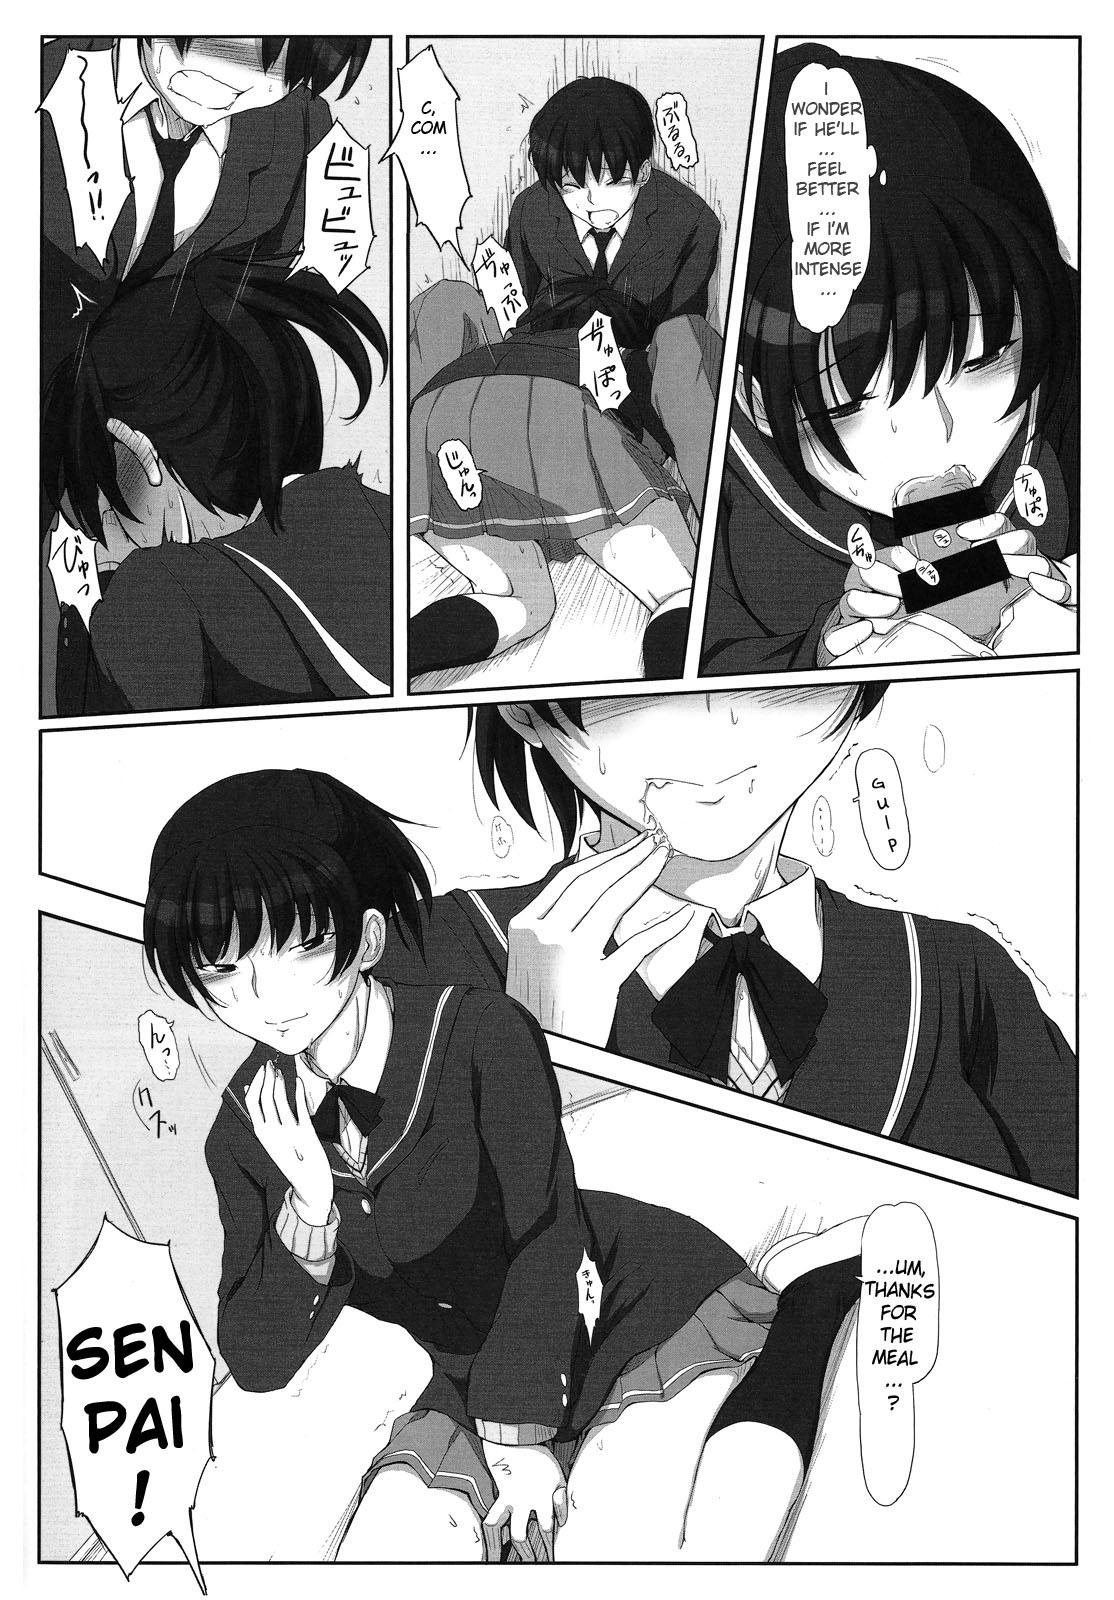 Hot Mikkai 4 - Secret Assignation 4 - Amagami Amateurs - Page 3